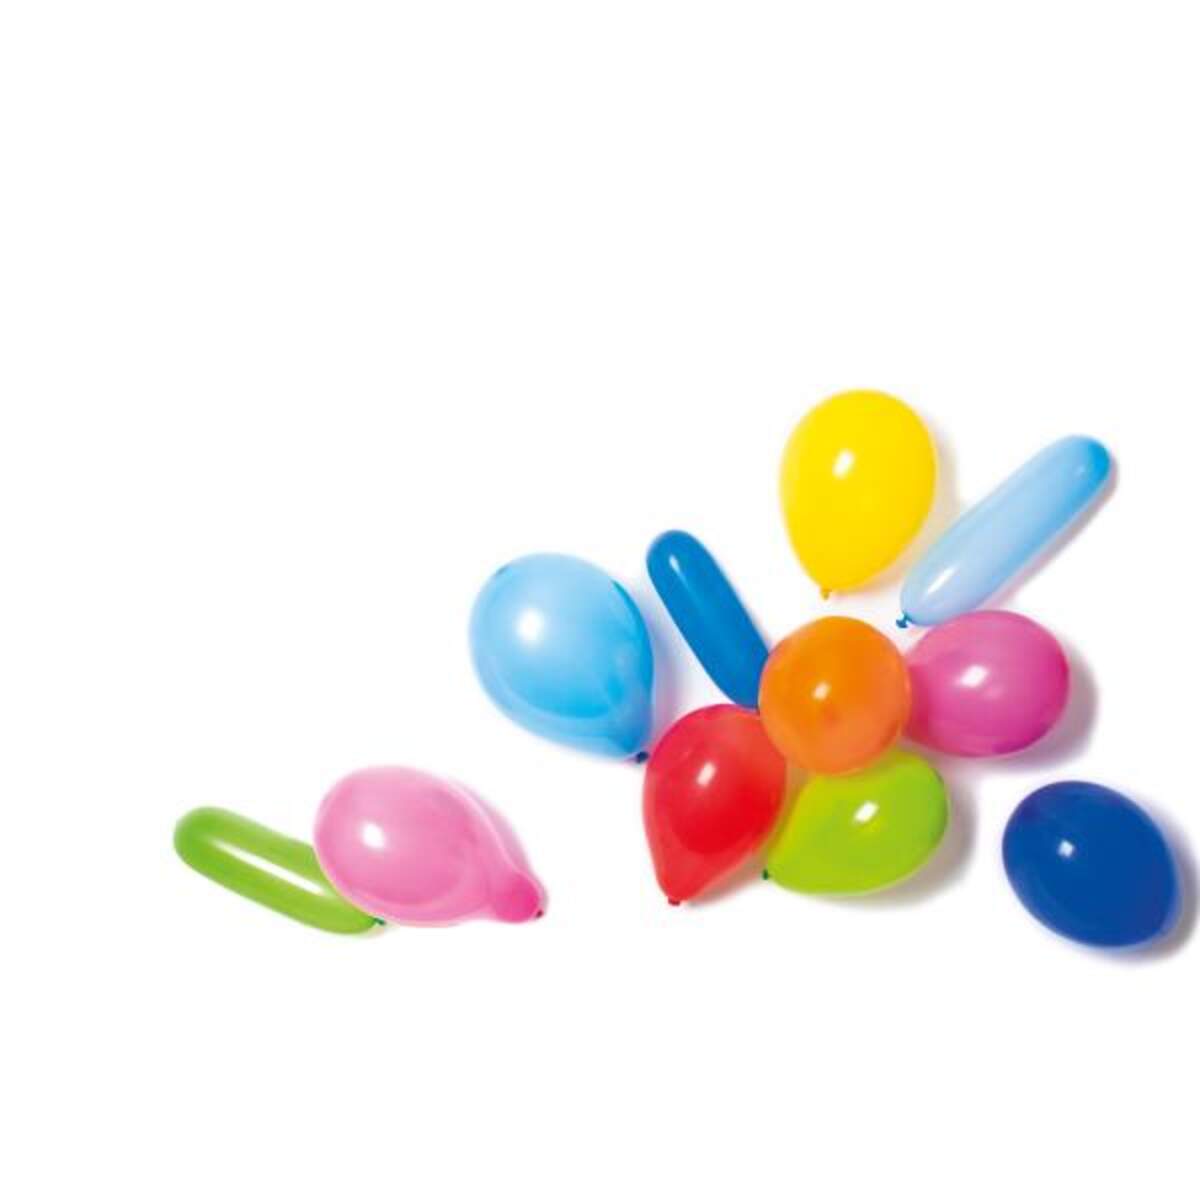 amscan Latex Ballons in verschiedenen Farben und Formen, 30 Stück